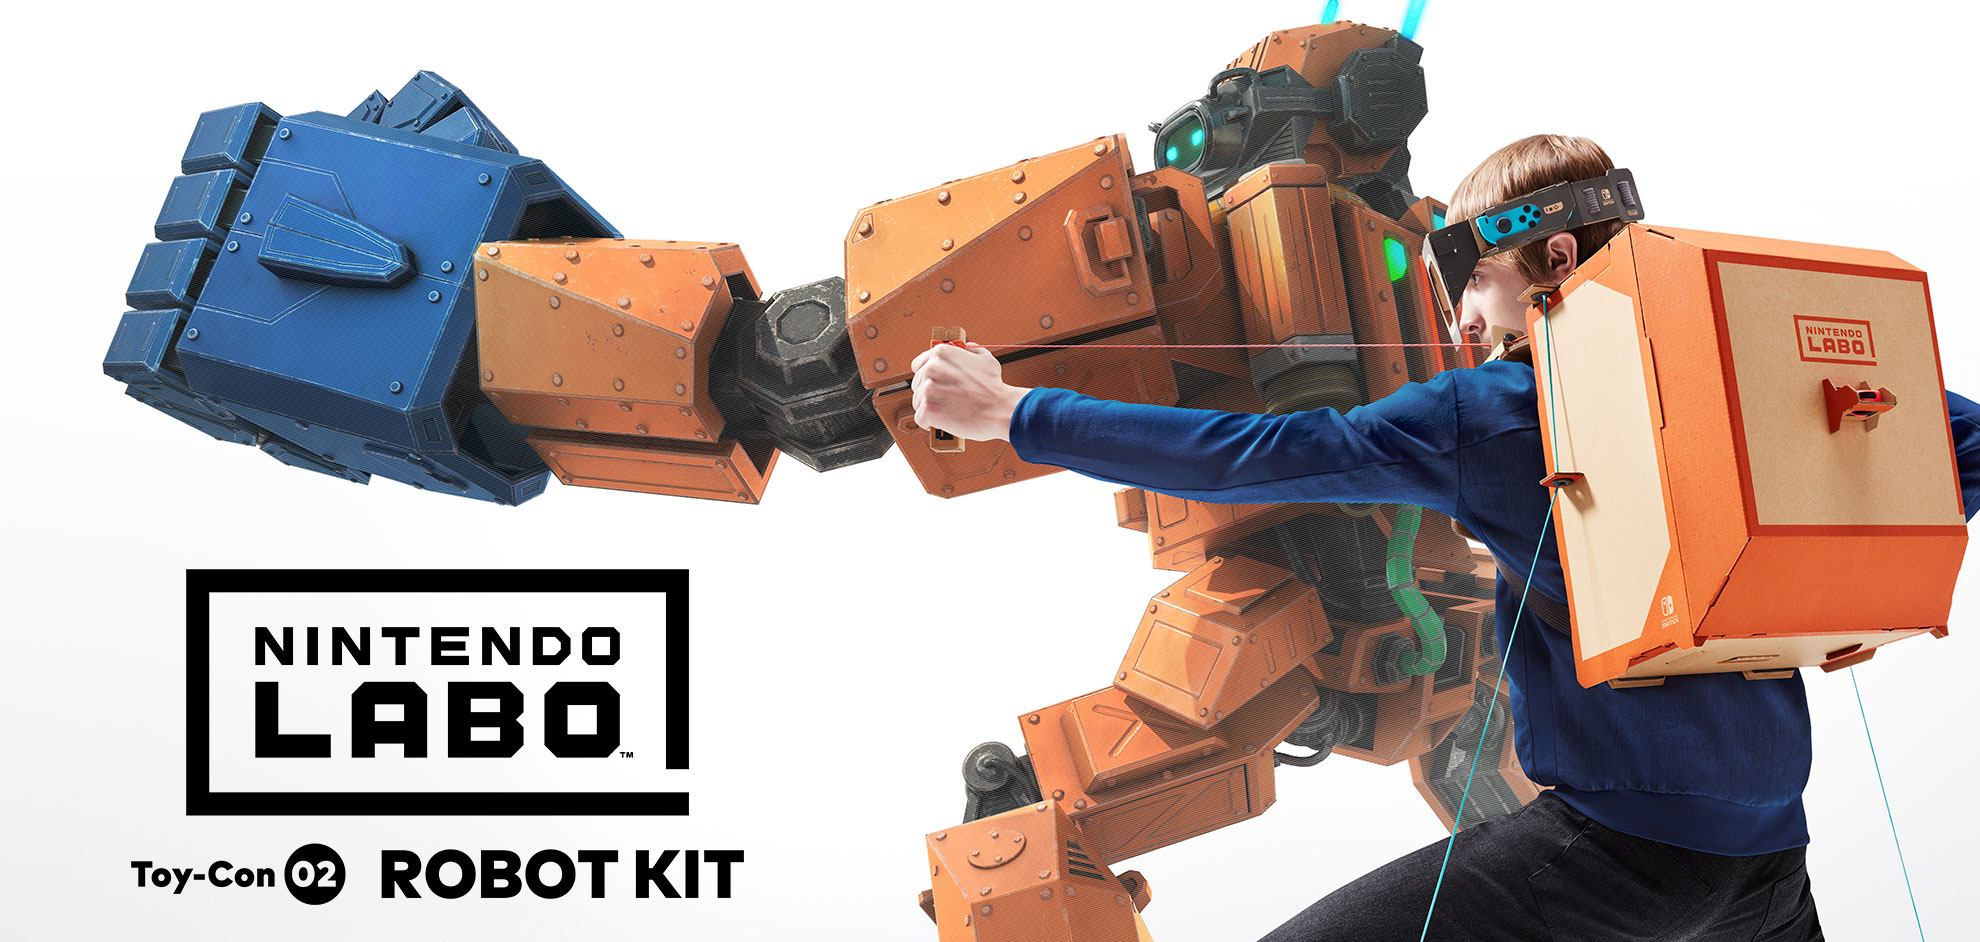 Seguir Lógicamente Consejo Nintendo Labo™ Toy-Con 02: Robot Kit | Nintendo Switch | Nintendo